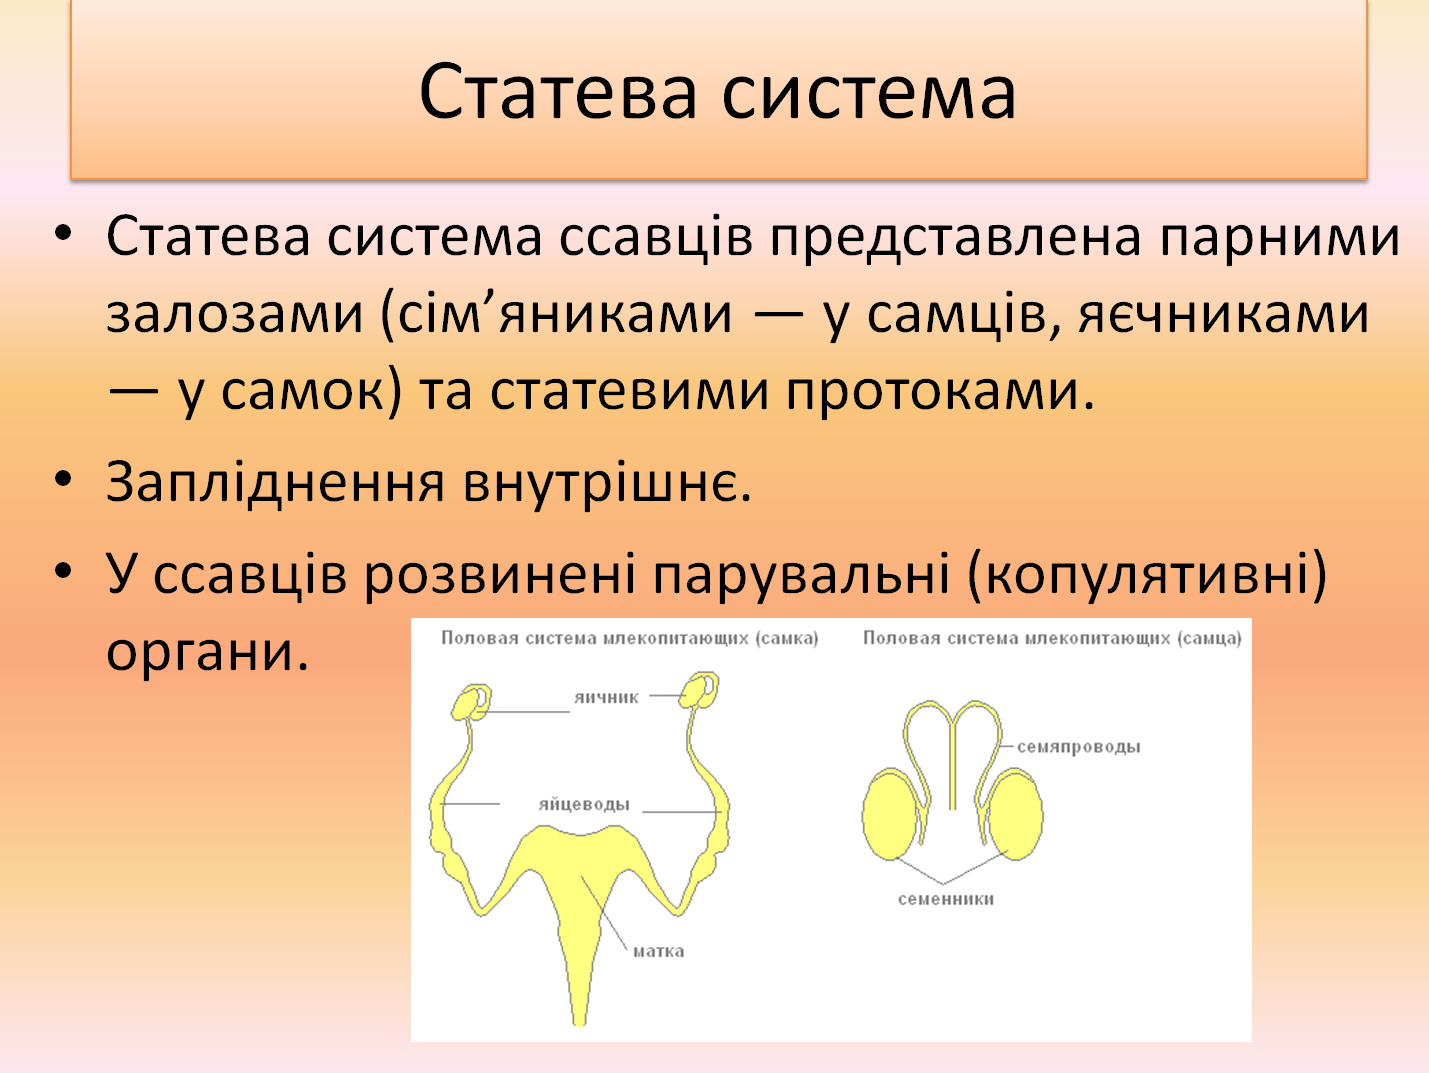 Дыхательная система млекопитающих функции. Половая система млекопитающих. Половая система млекопитающих кратко. Половая система млекопитающих таблица. Мужская половая система млекопитающих.